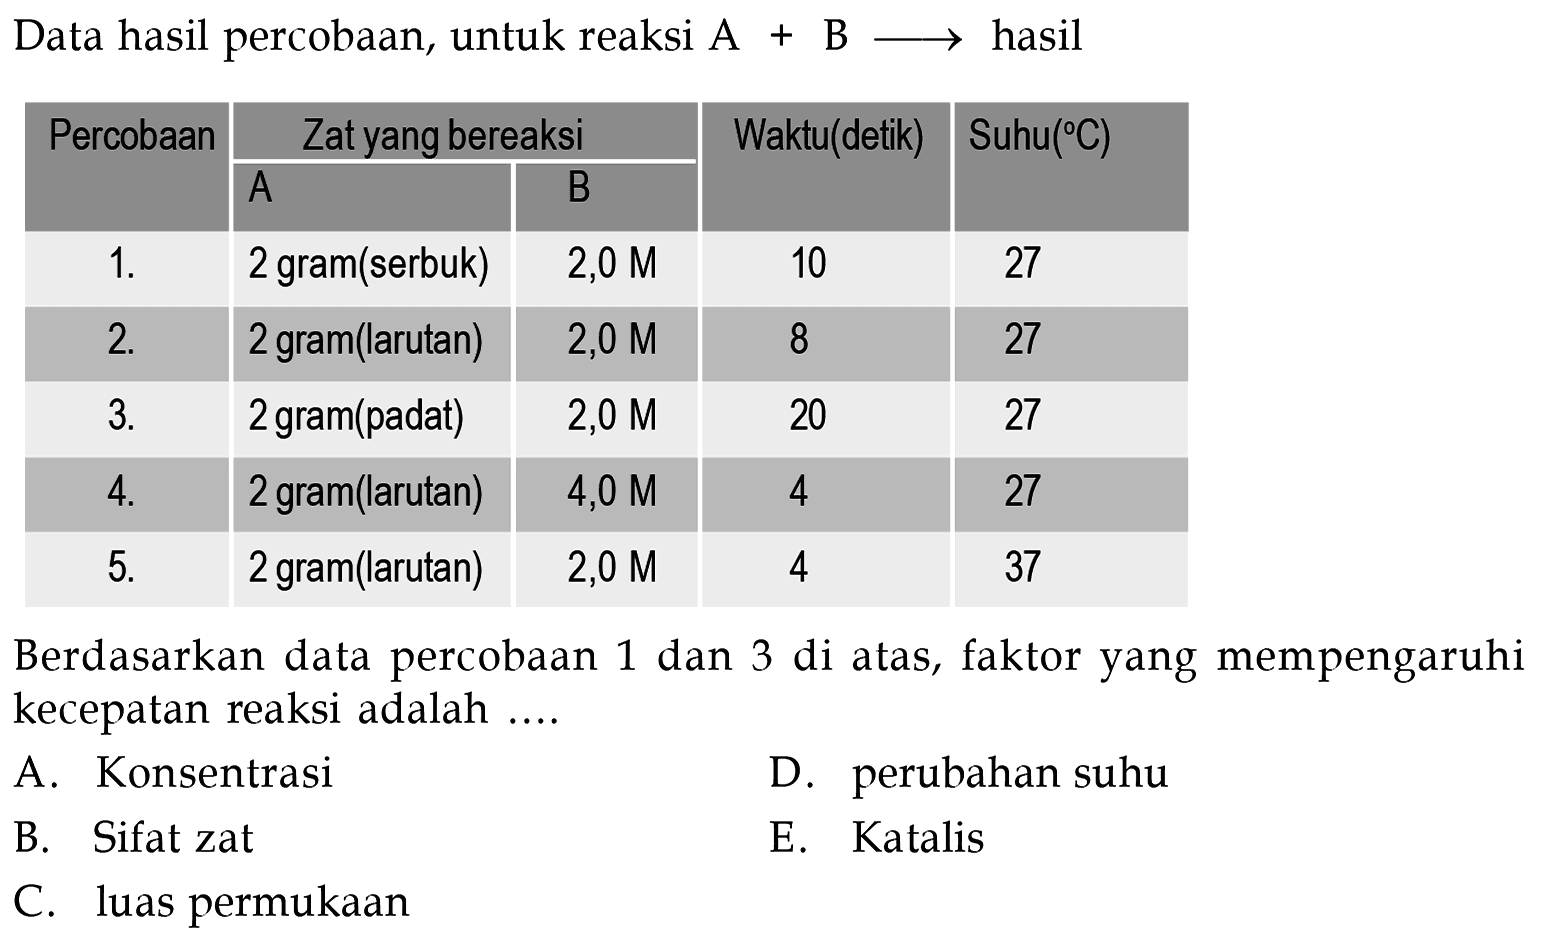 Data hasil percobaan, untuk reaksi  A+B =>  hasil Percobaan Zat yang bereaksi  Waktu(detik)  Suhu(C) A  B  1 . 2 gram(serbuk)  2,0 M 10 27 2 . 2 gram(larutan) 2,0 M  8  27 3 . 2 gram(padat)   2,0 M  20  27 4 . 2 gram(larutan)  4,0 M  4  27 5 . 2 gram(larutan)  2,0 M 4 37 Berdasarkan data percobaan 1 dan 3 di atas, faktor yang mempengaruhi kecepatan reaksi adalah....